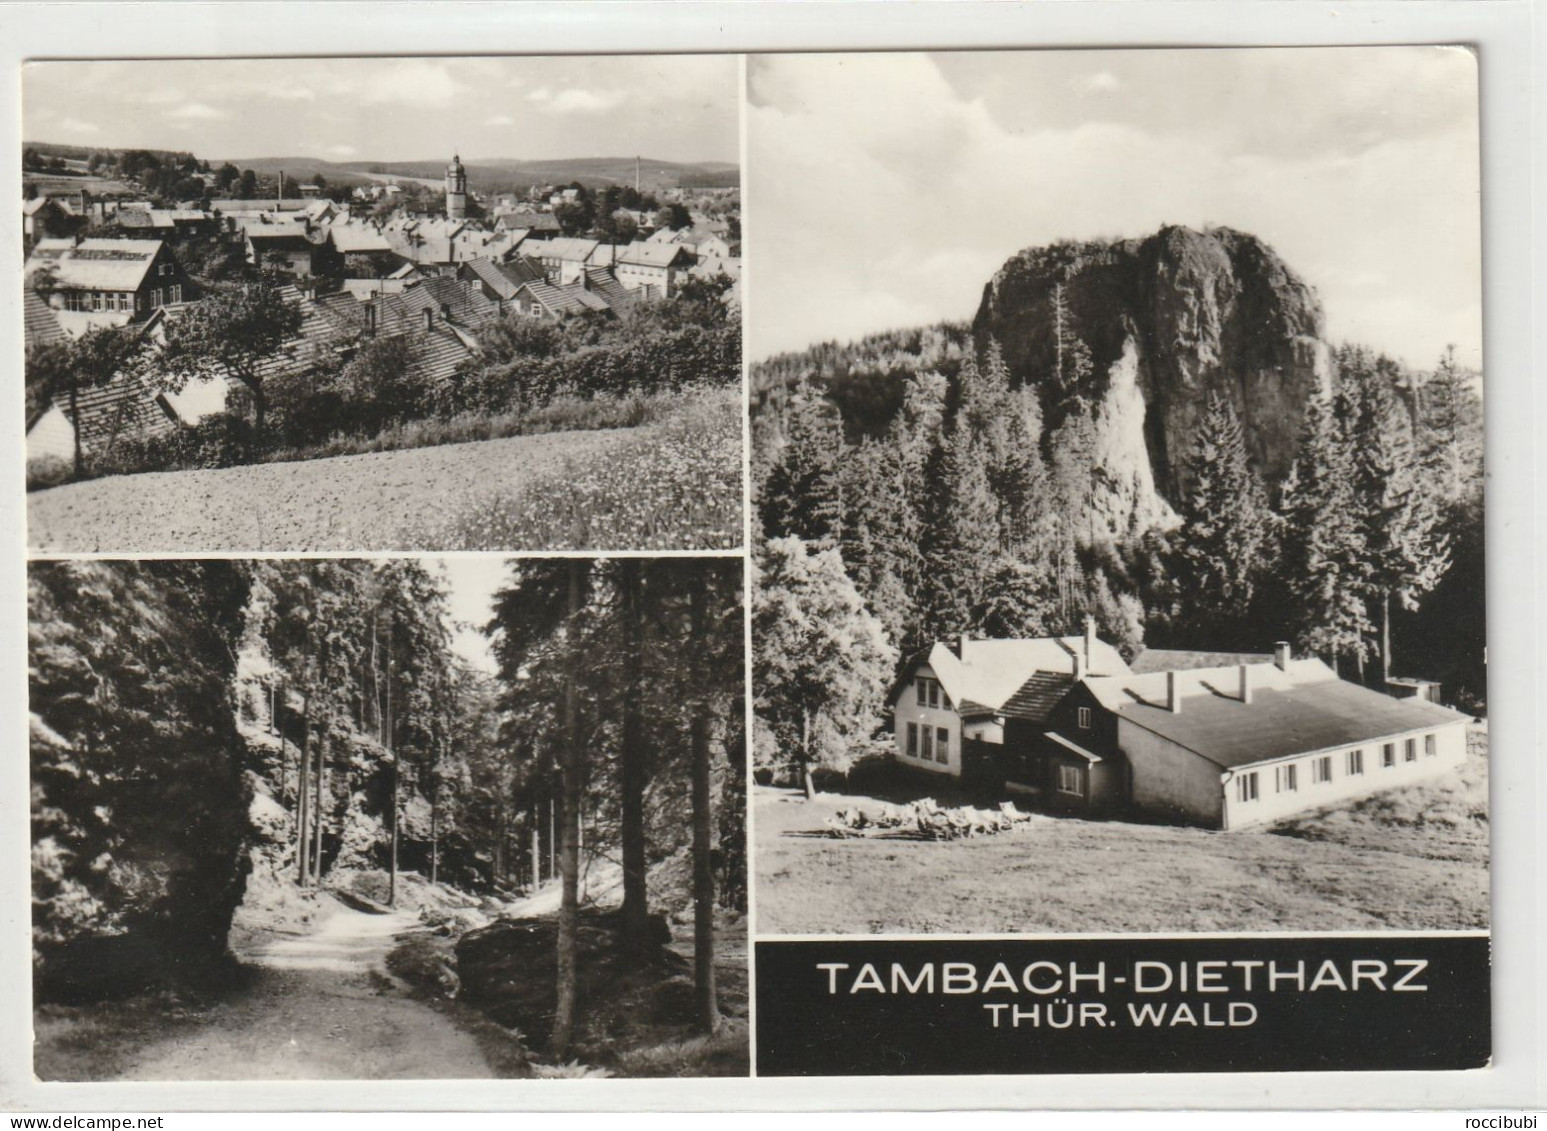 Tambach-Dietharz - Tambach-Dietharz